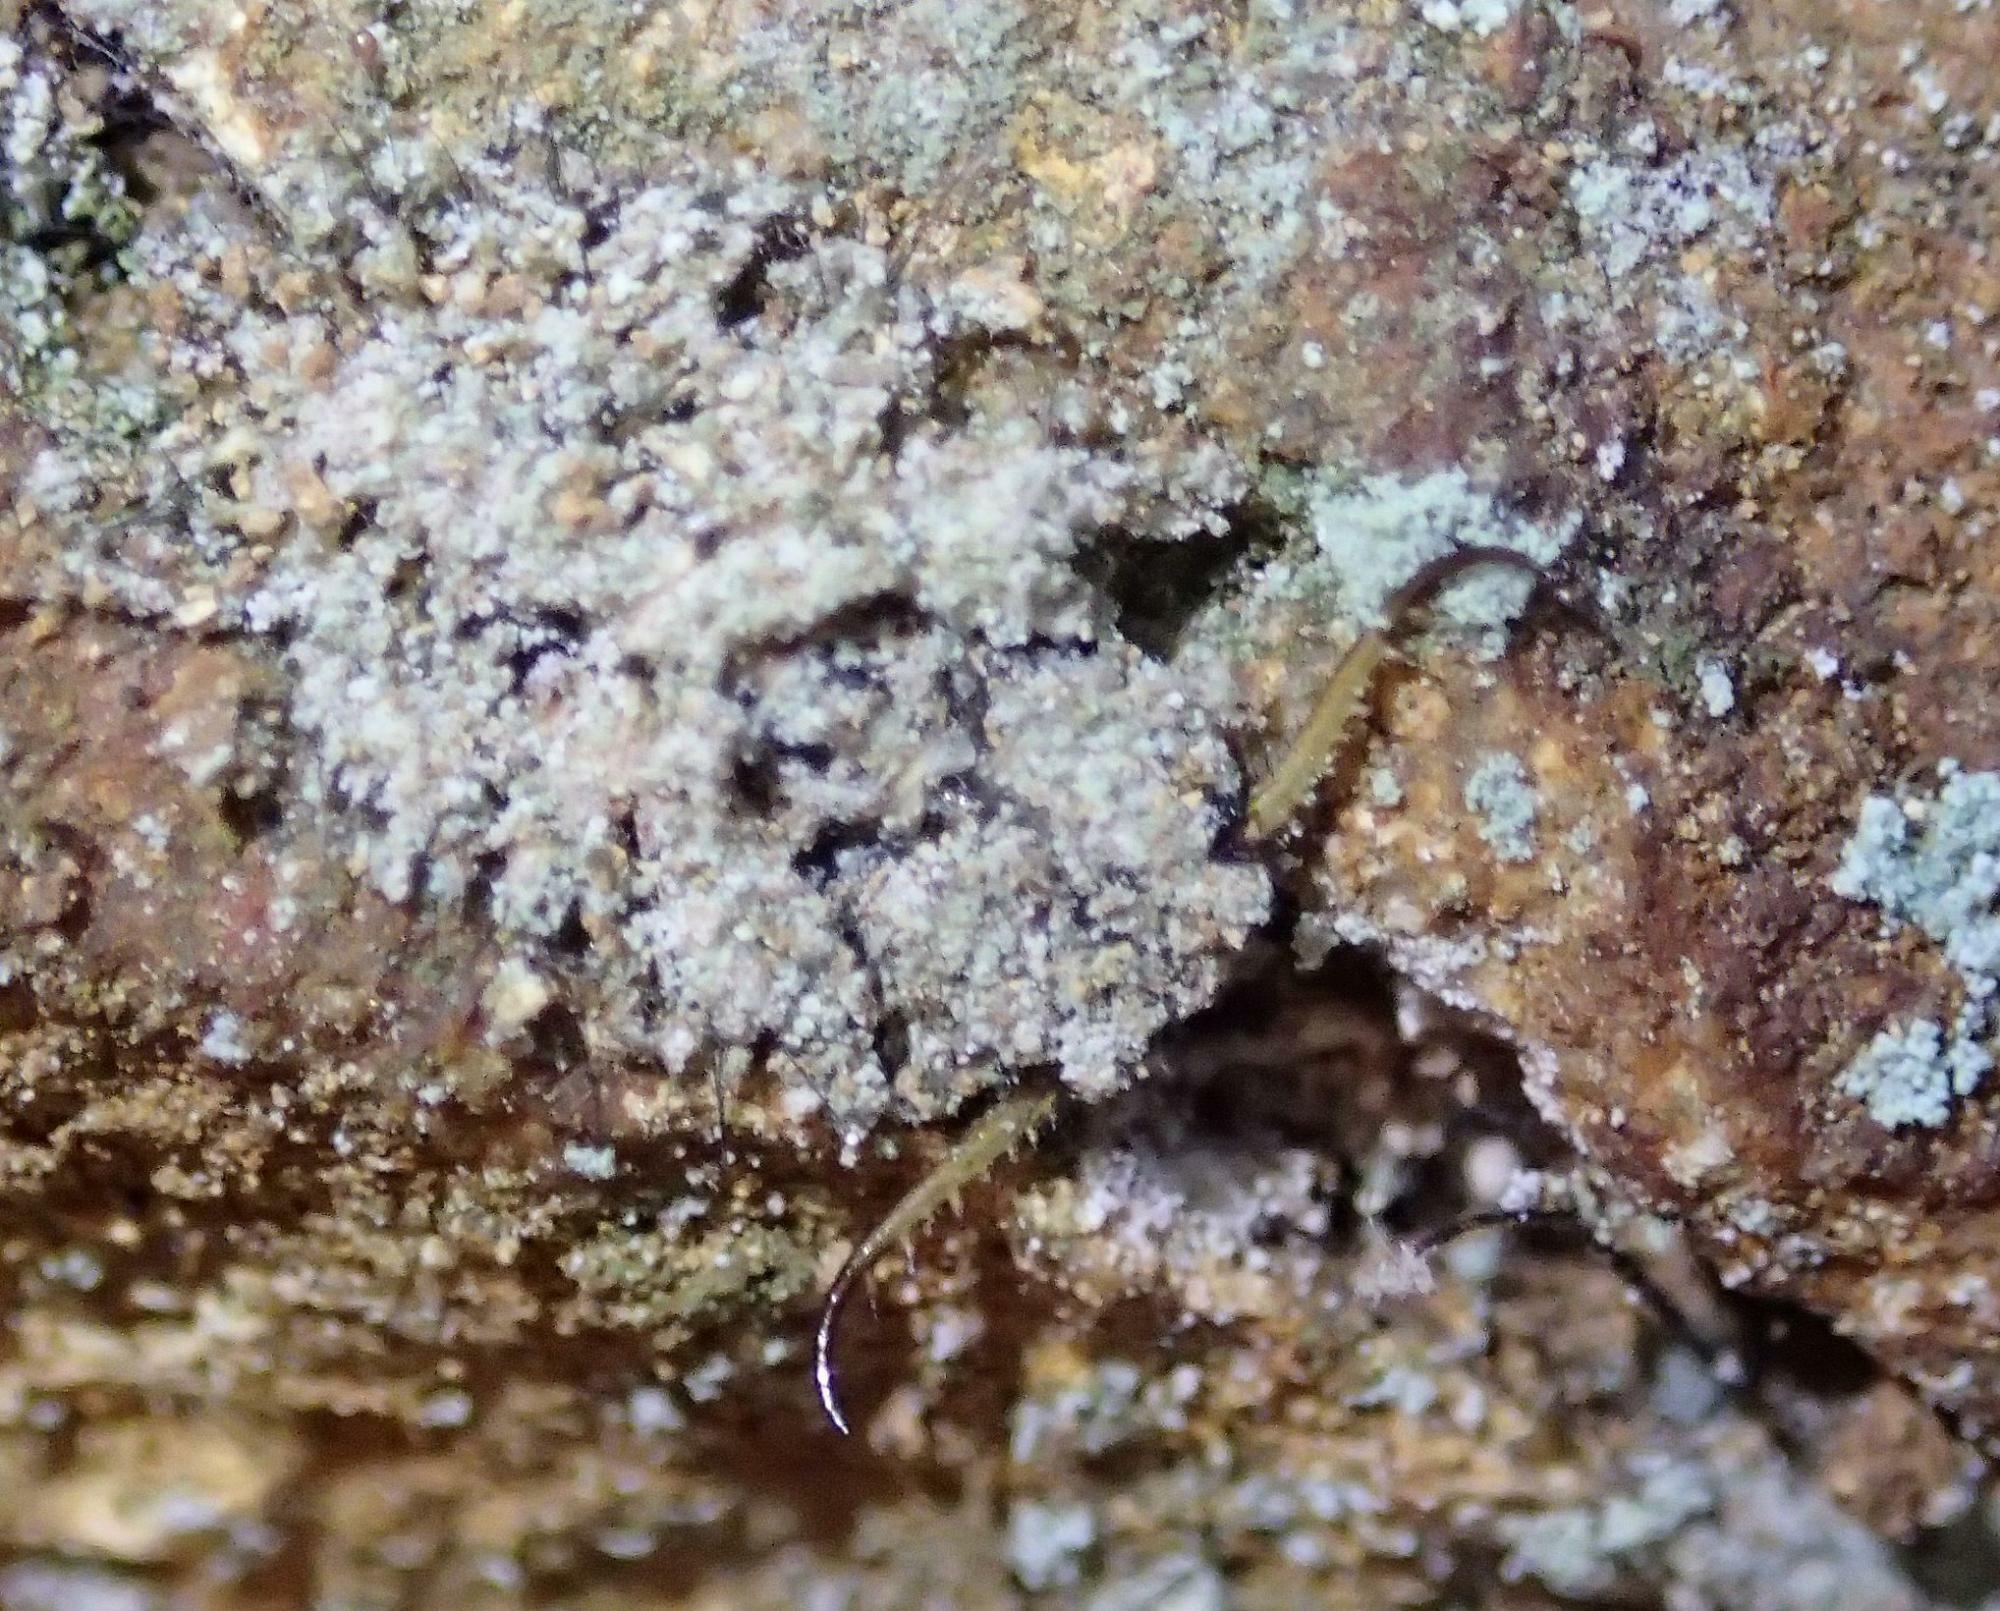 岩壁で越冬するコマダラウスバカゲロウ幼虫。胴体は地衣類と同化し、牙（大あご）だけが目立つ。